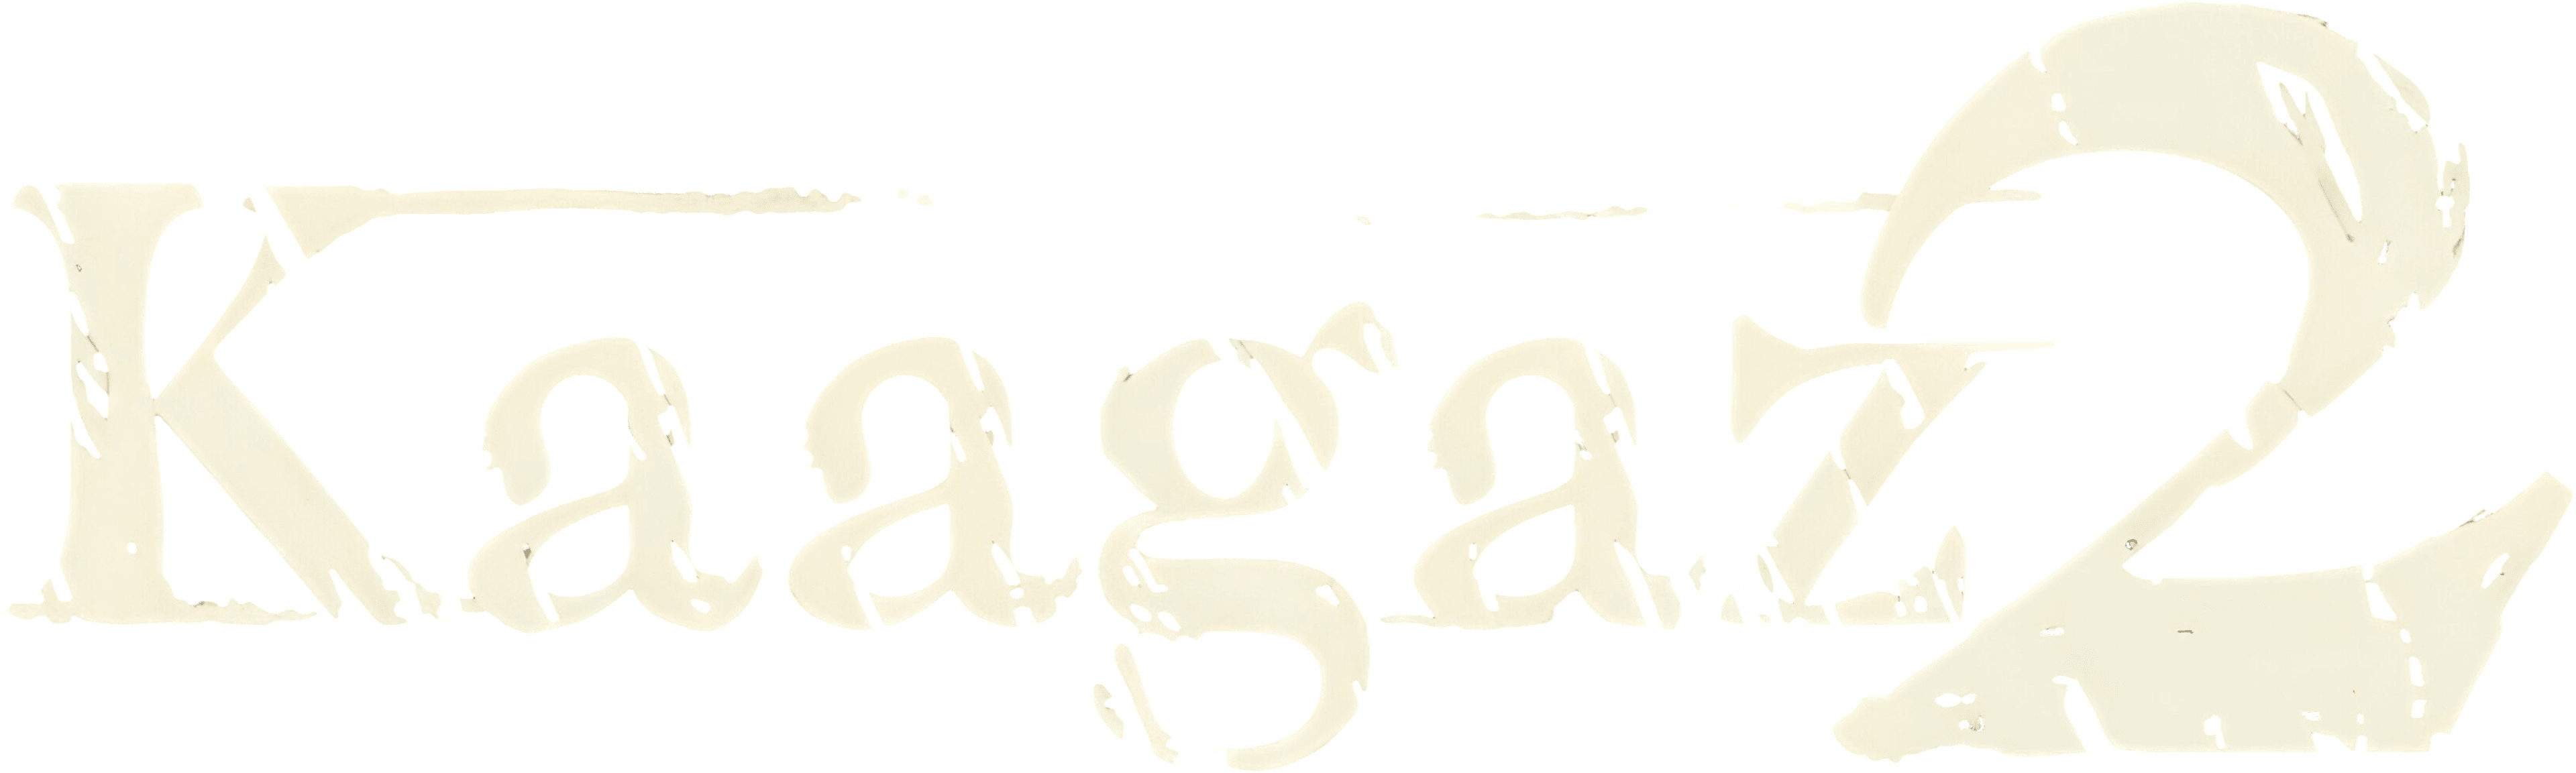 Kaagaz 2 logo